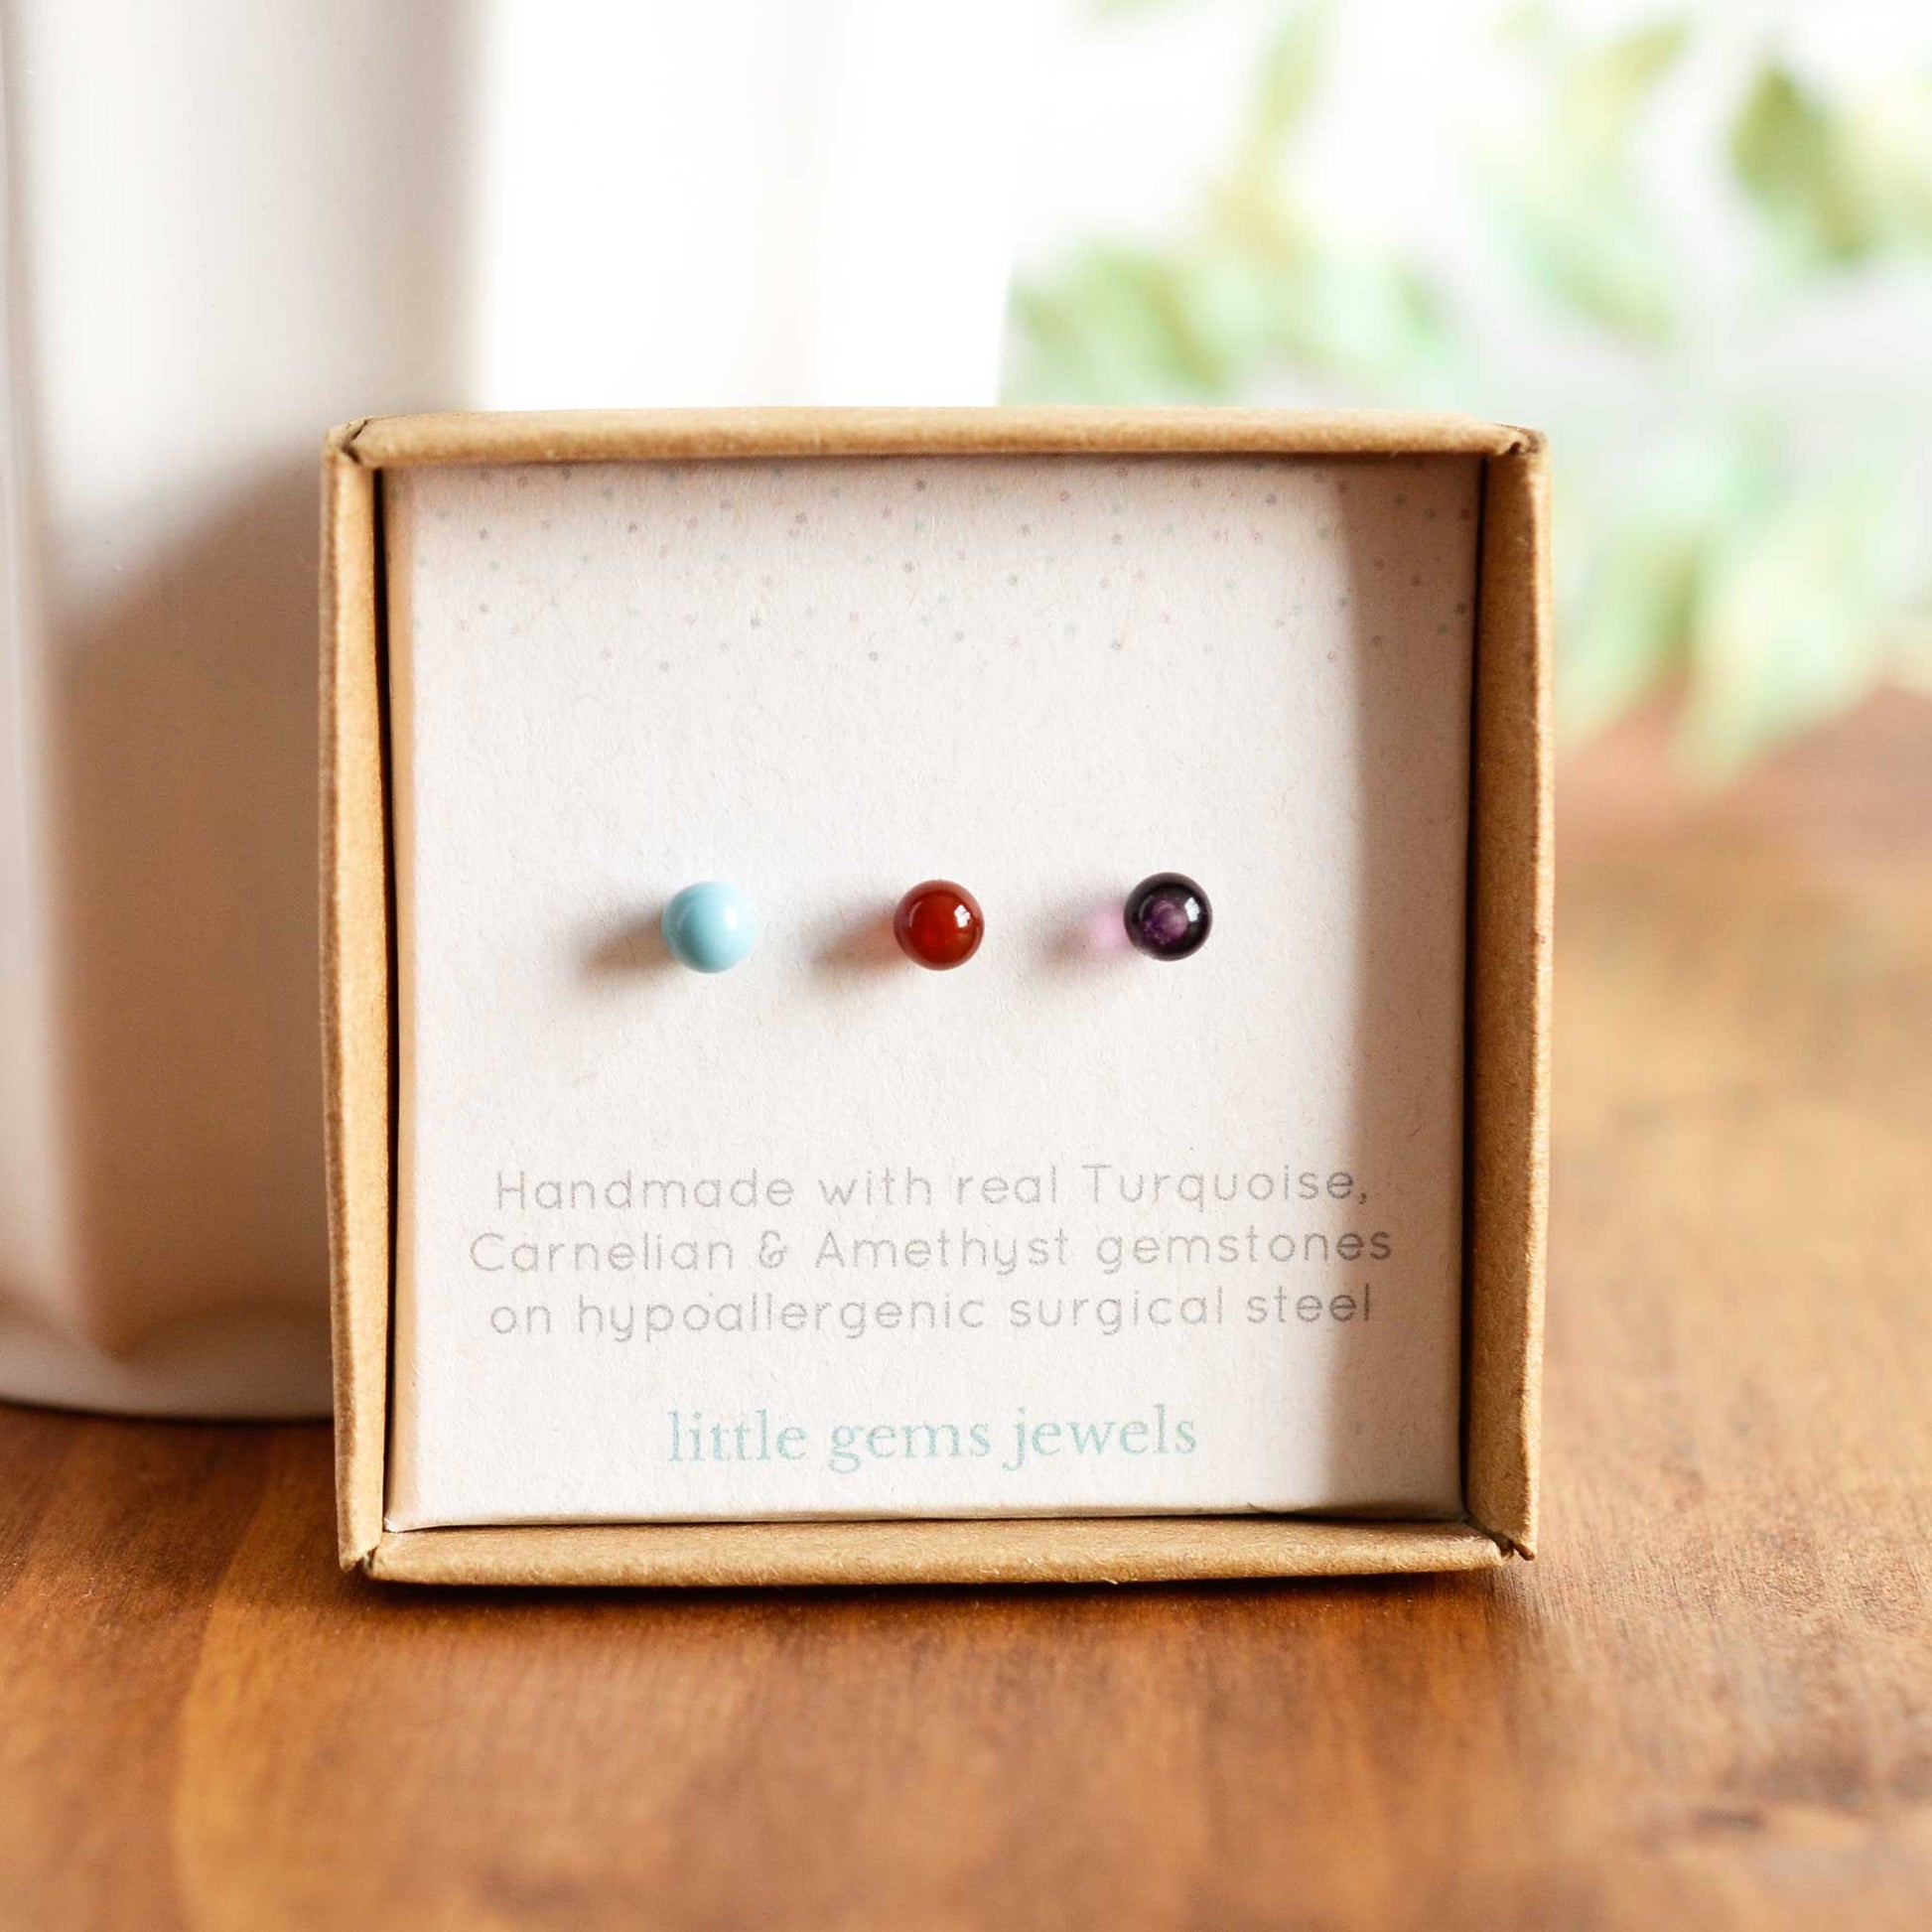 Turquoise, Carnelian & Amethyst single stud earrings in eco friendly gift box